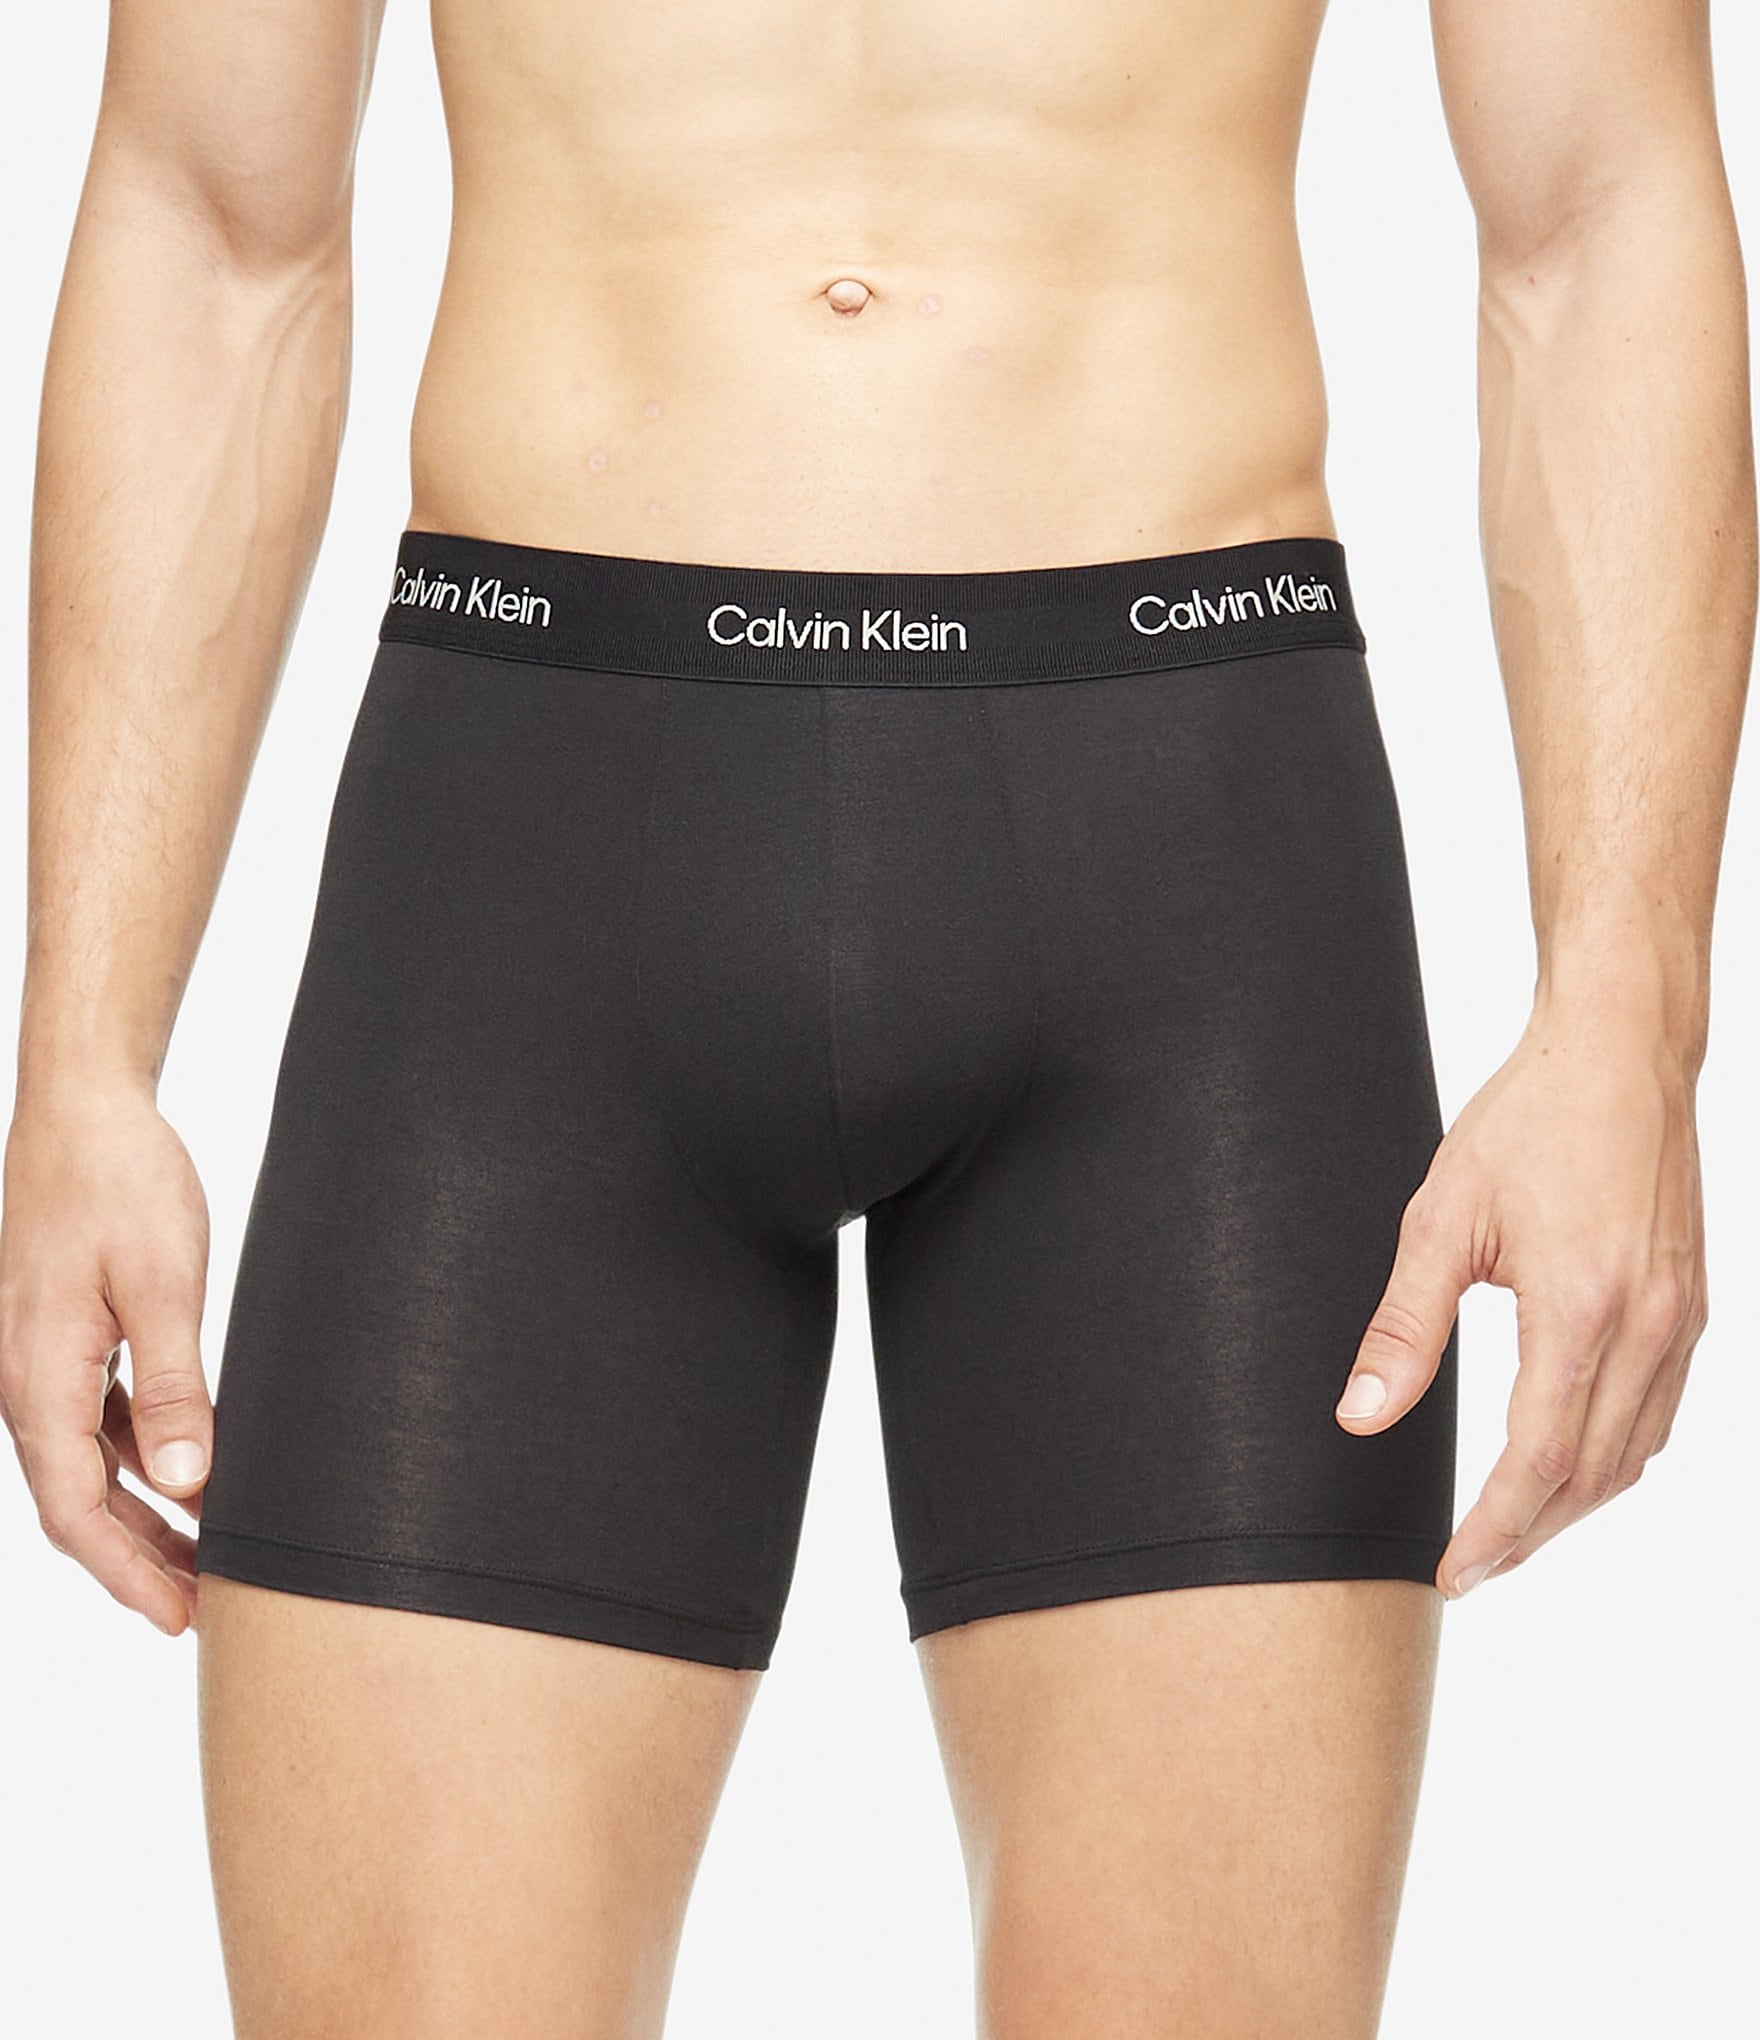 Calvin Klein Men's Underwear, Undershirts, & Socks